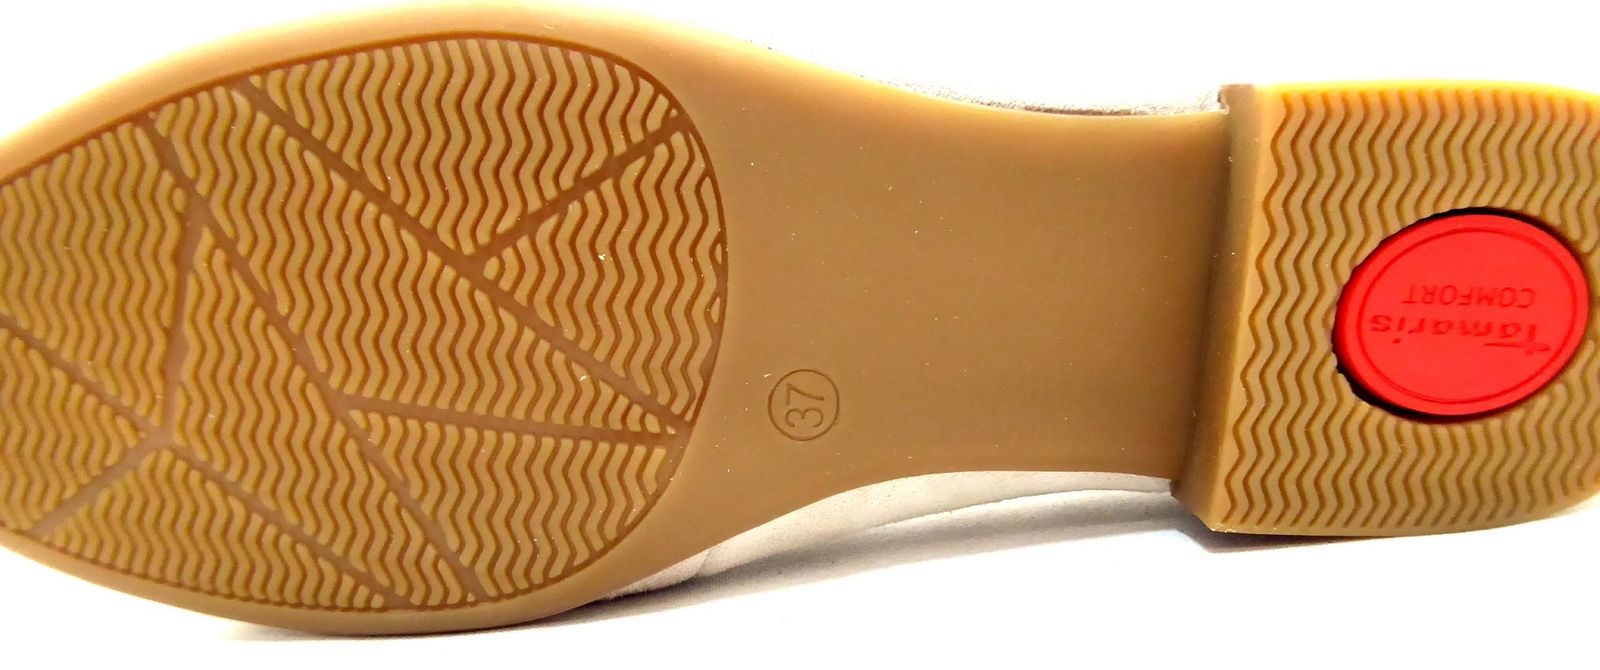 Schuh von Tamaris, 39